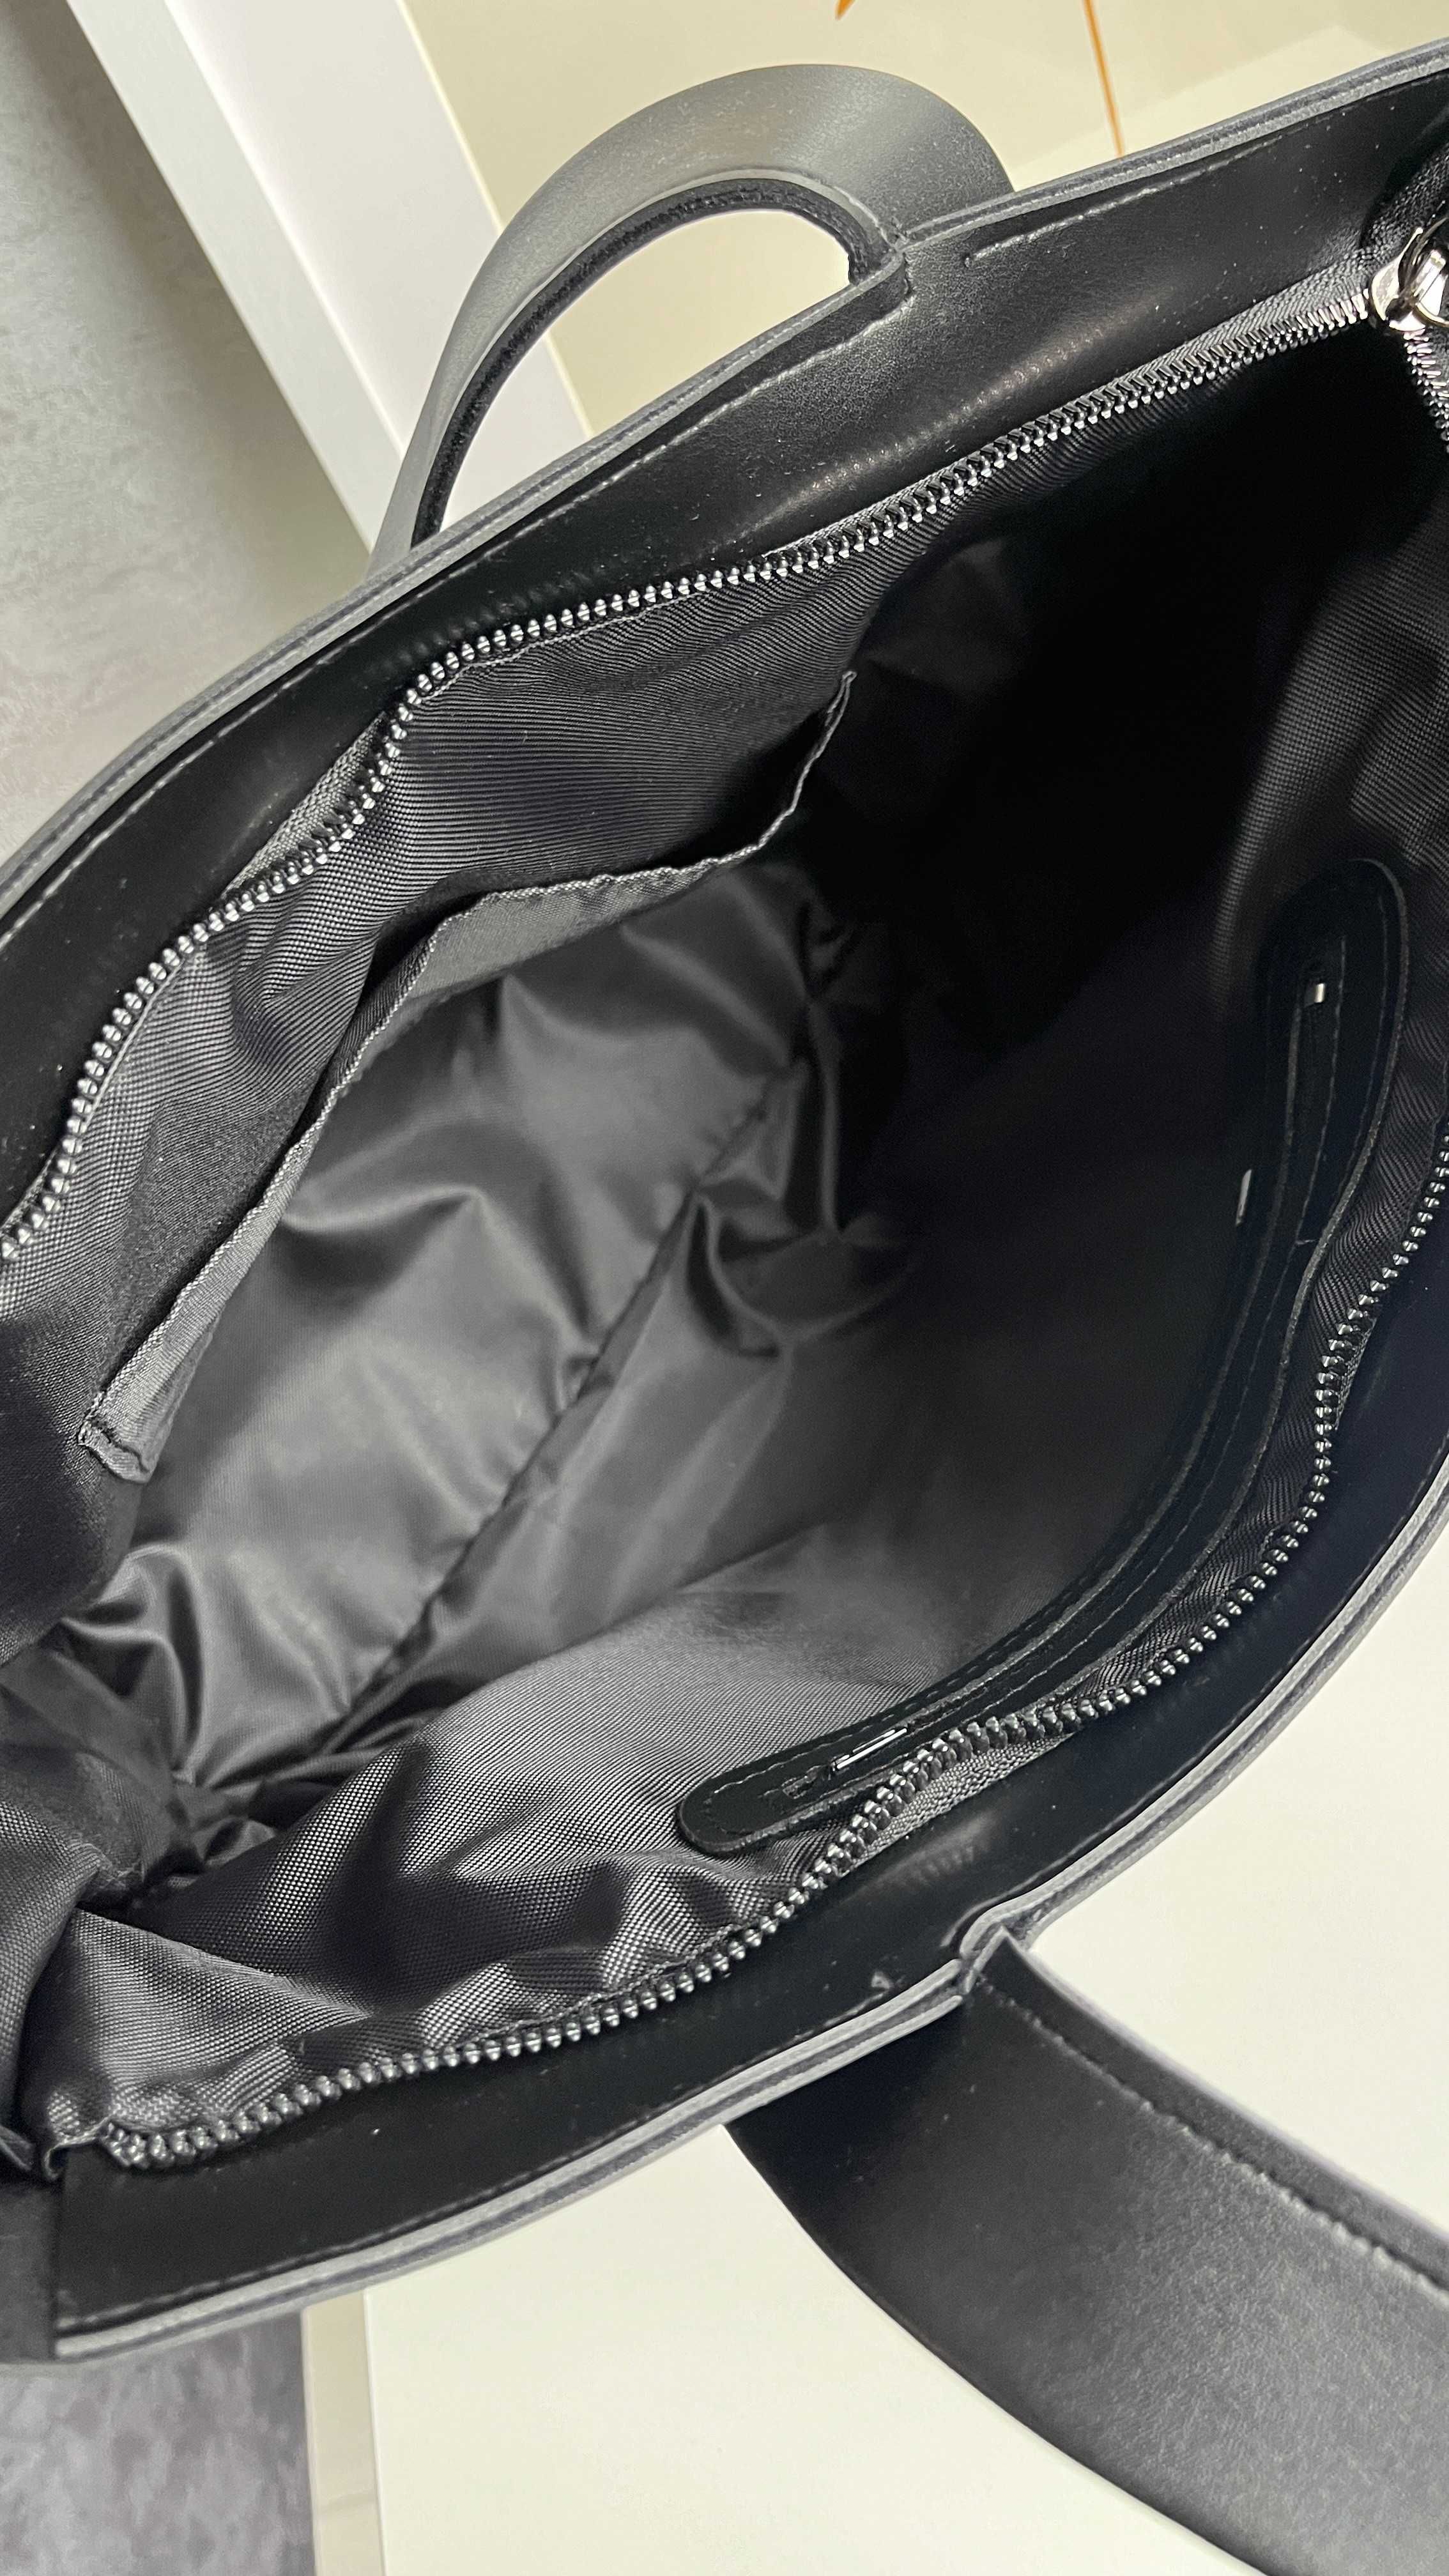 Місткий жіночий шопер сумка з еко-шкіри чорний та темно-коричневий